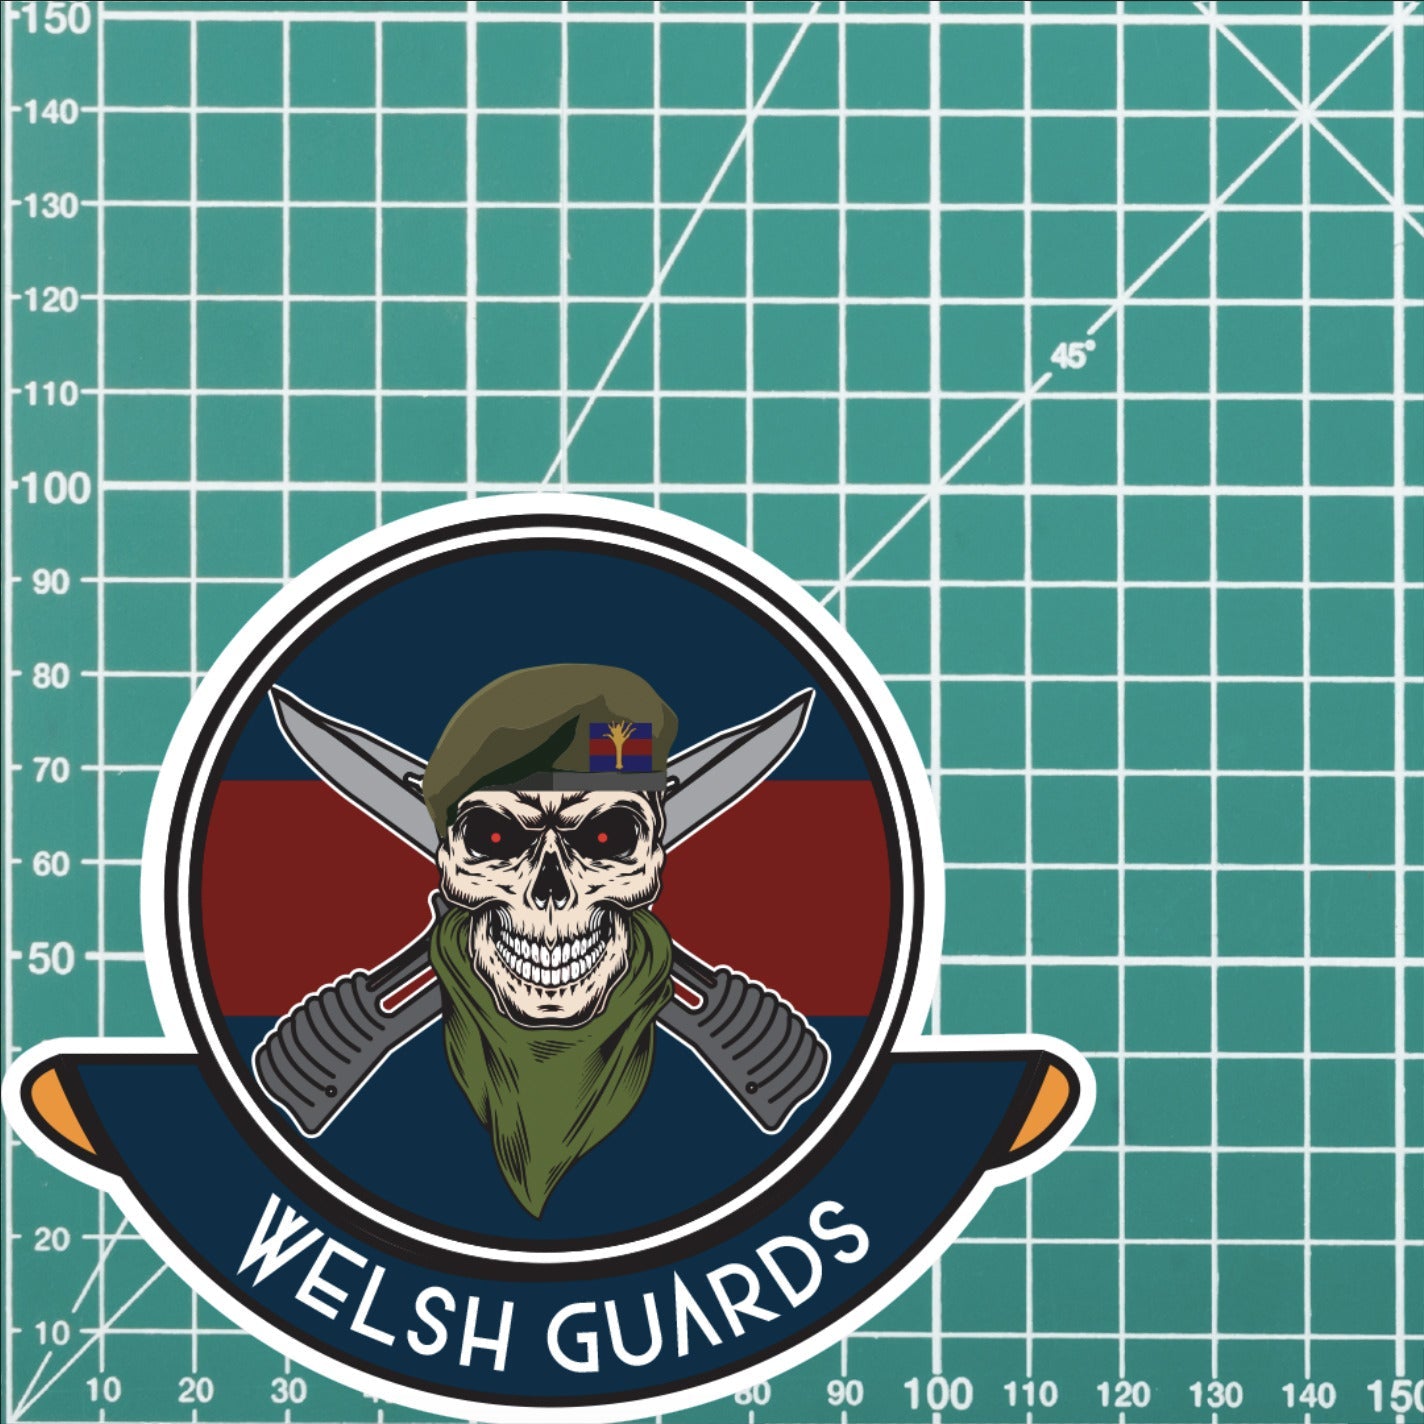 Skull Crest Welsh Guards Vinyl Sticker | 10cm | UV Laminated | redplume